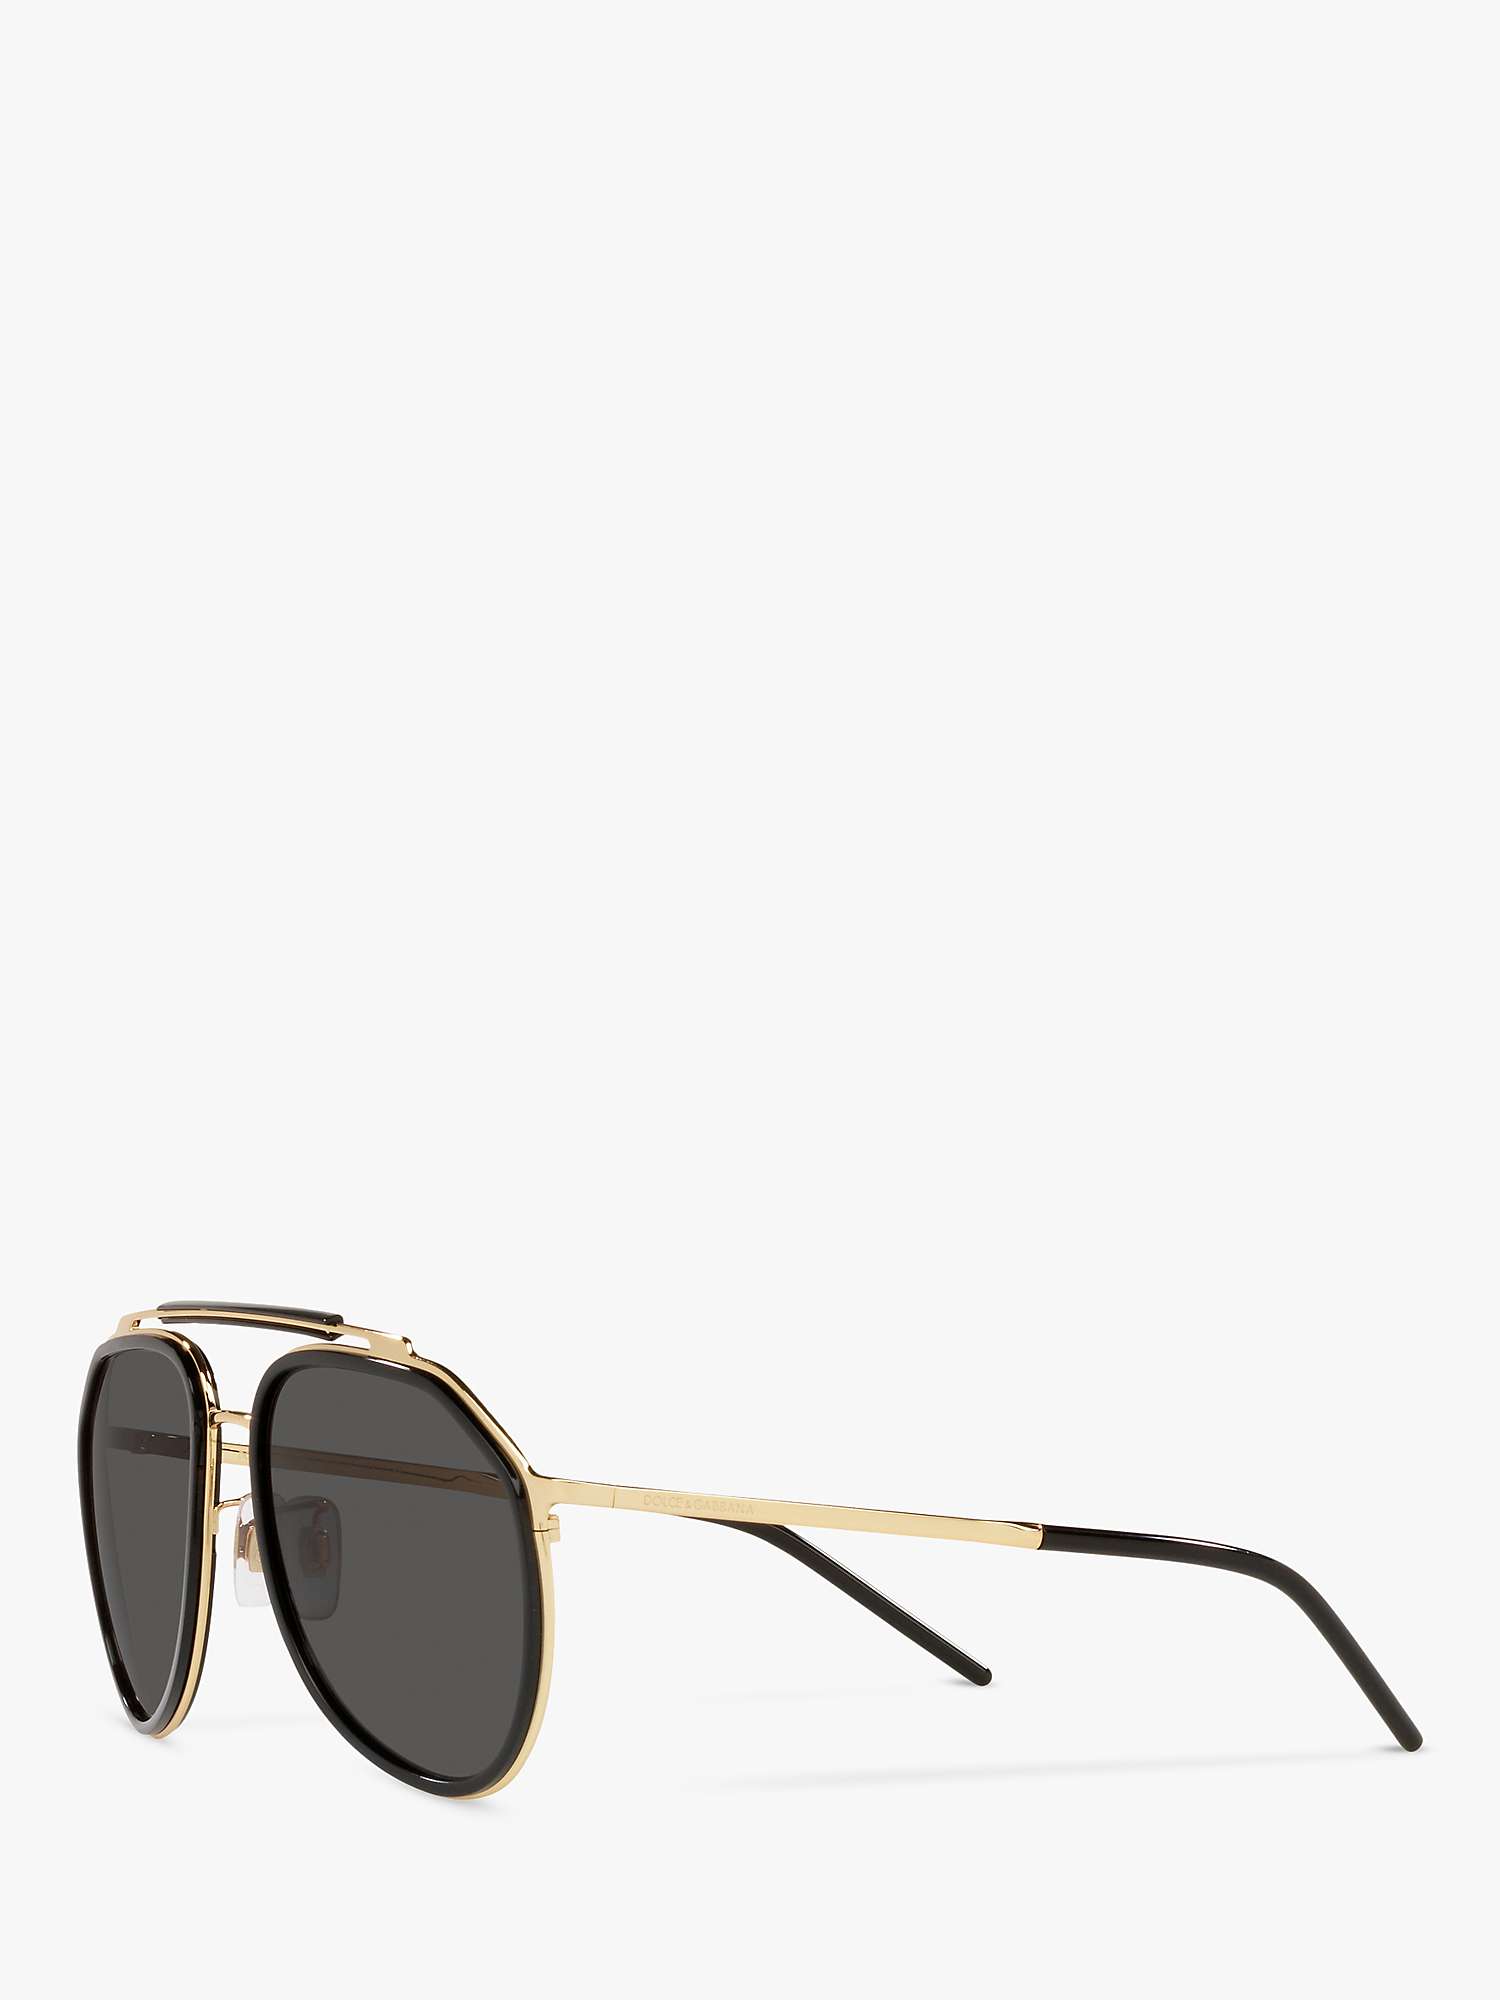 Buy Dolce & Gabbana DG2277 Men's Aviator Sunglasses, Gold/Black Online at johnlewis.com